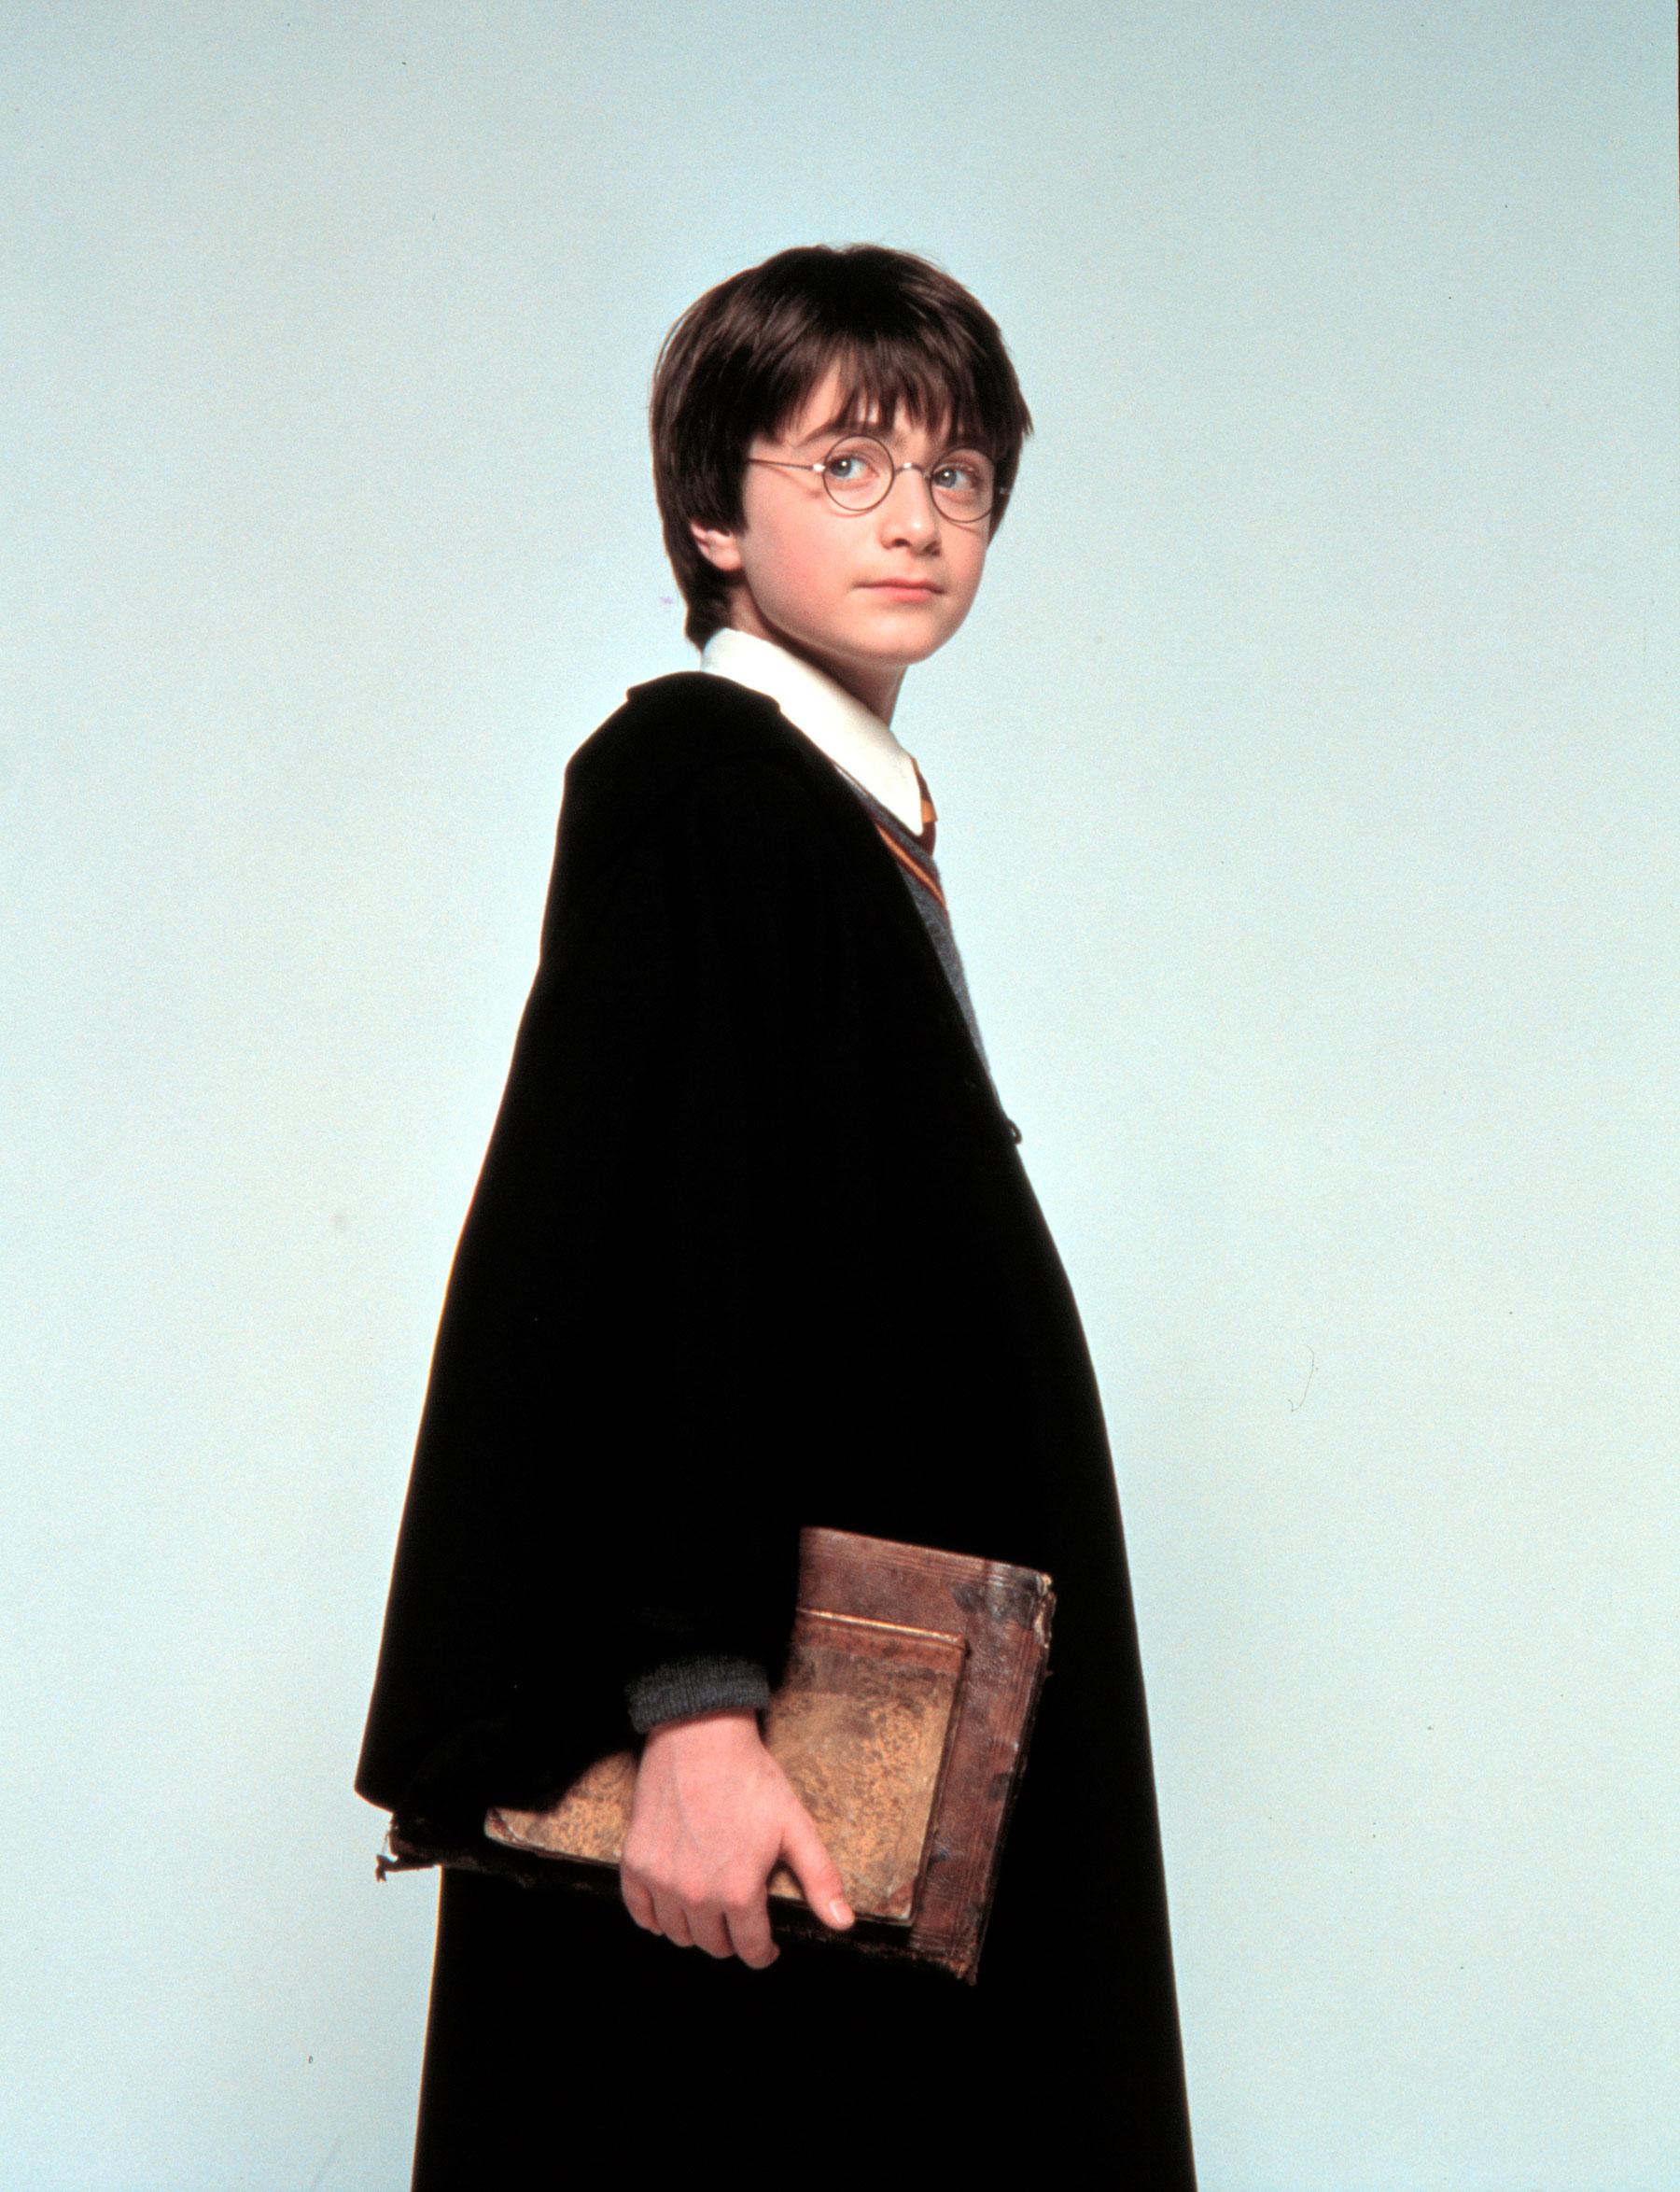 Daniel Radcliffe som ”Harry Potter”.